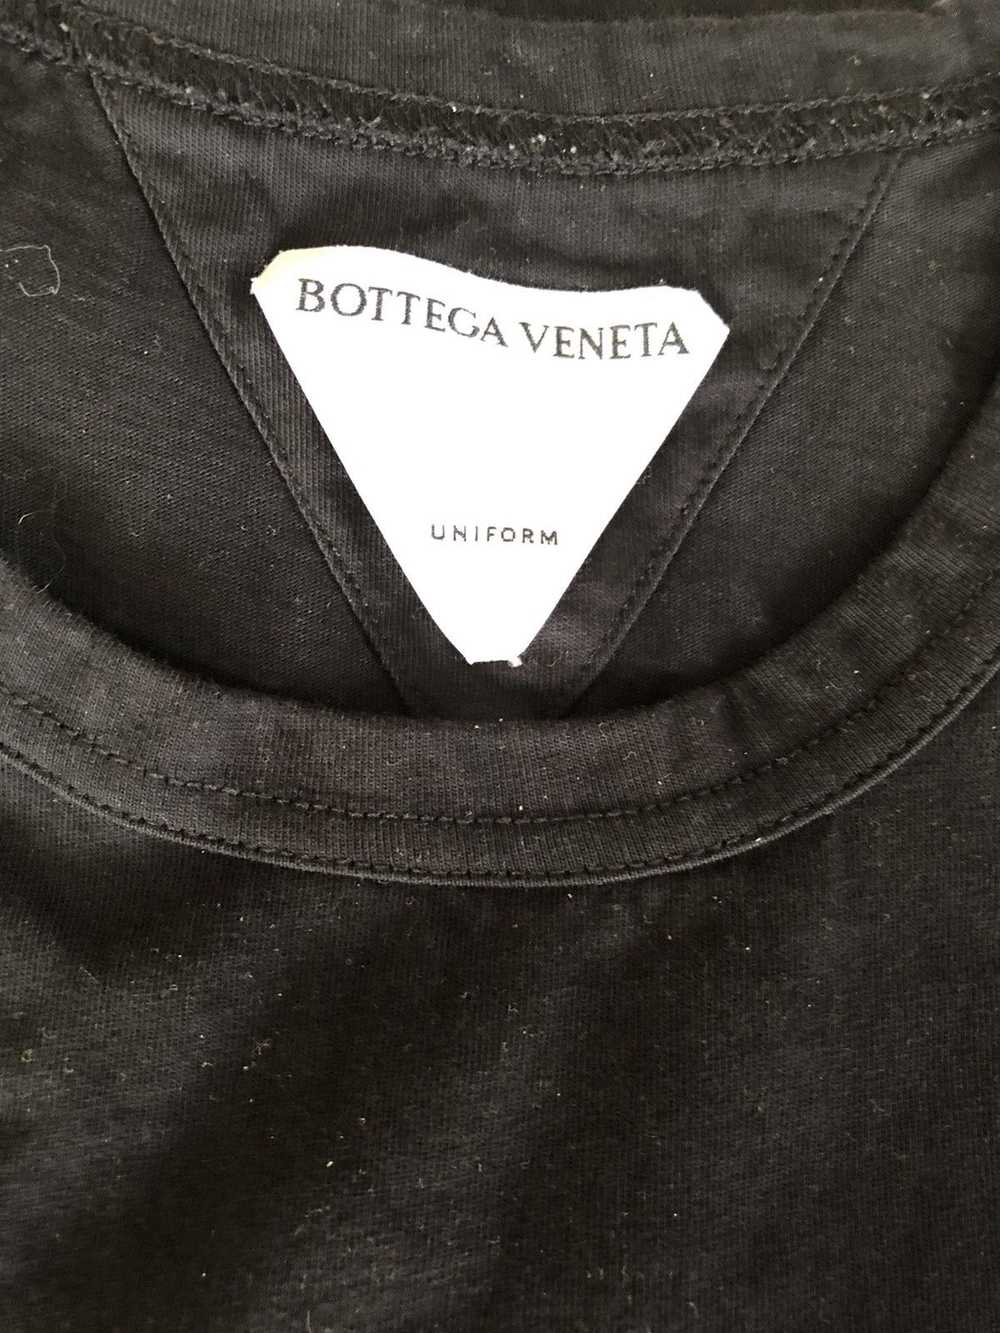 Bottega Veneta Bottega tank top shirt large - image 6